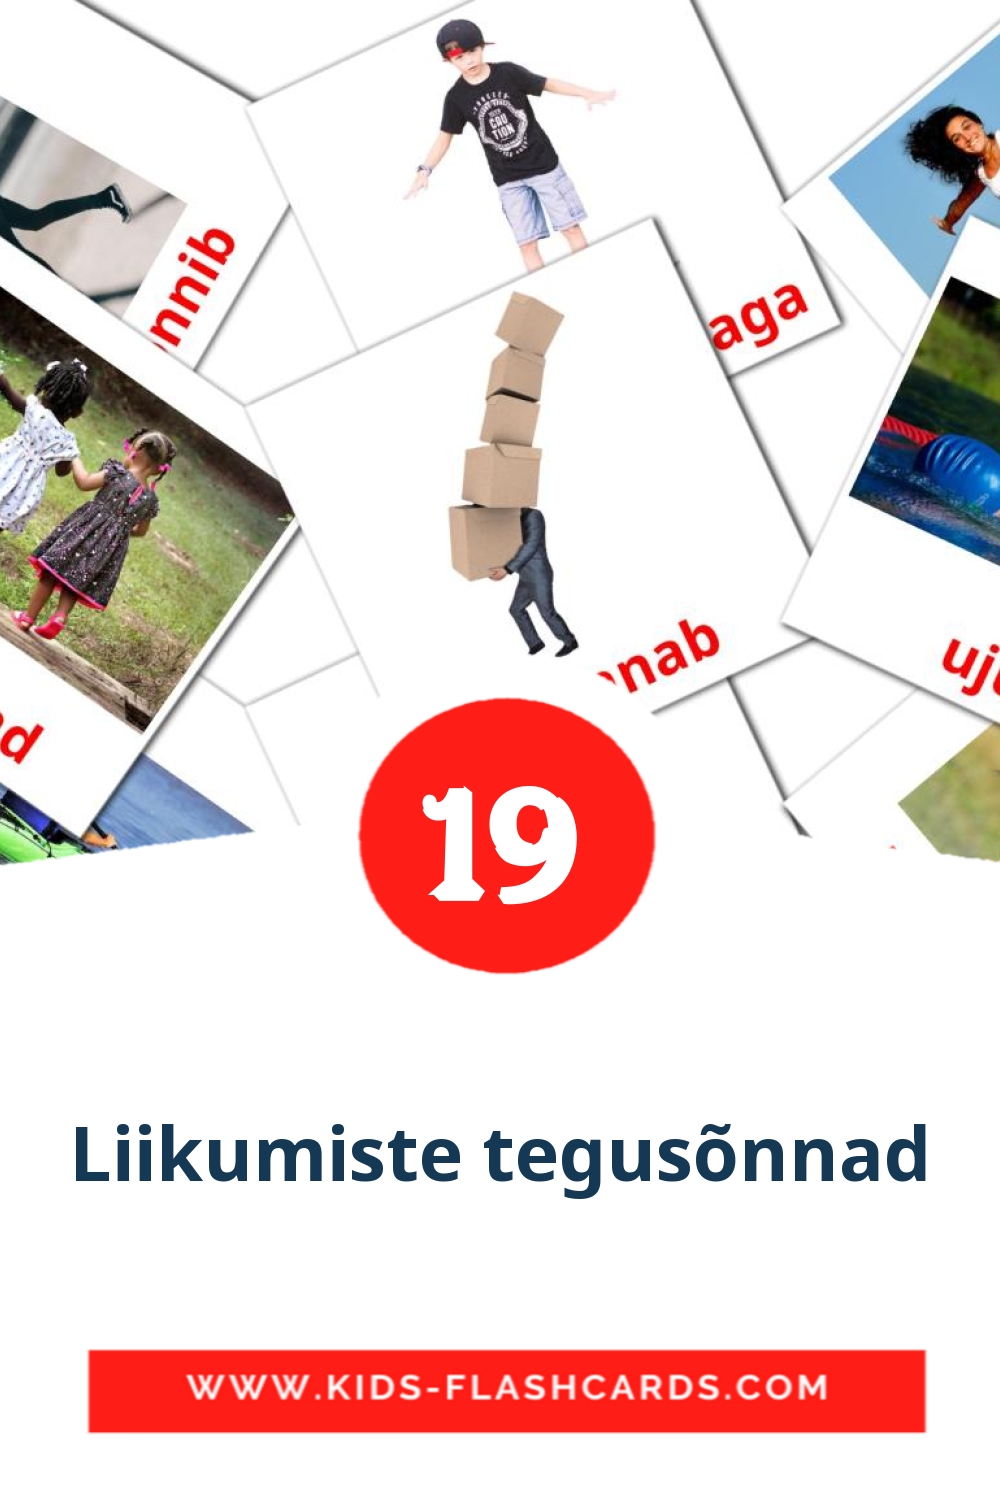 19 tarjetas didacticas de Liikumiste tegusõnnad para el jardín de infancia en estonio